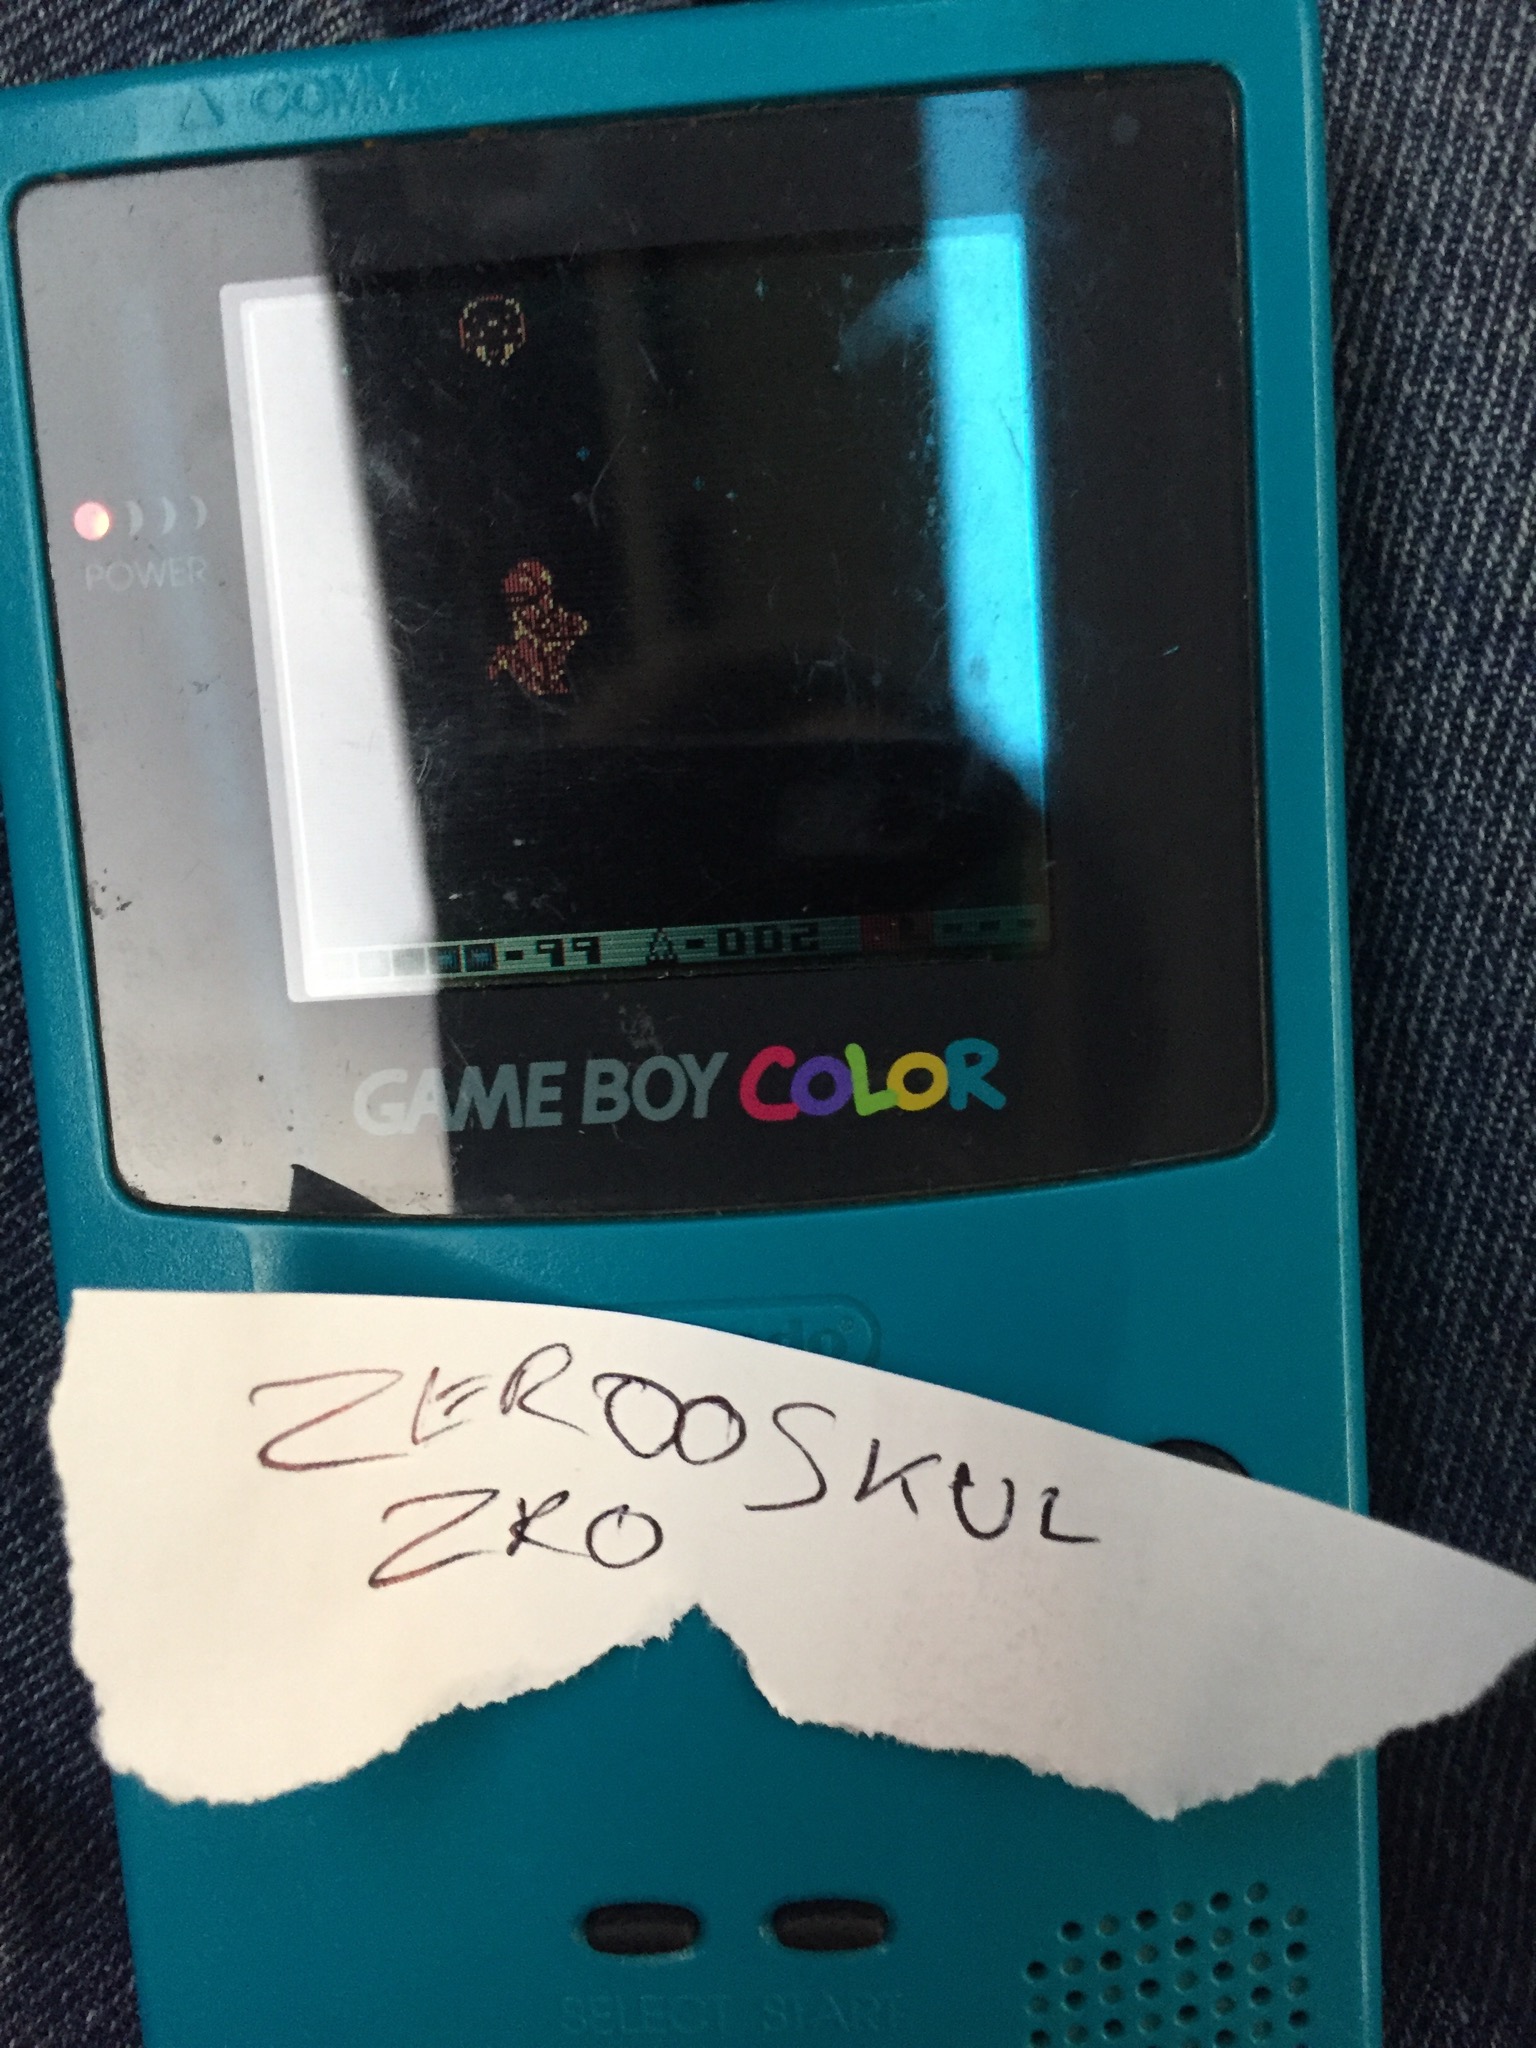 zerooskul: Metroid II (Game Boy) 3:47:00 points on 2018-05-31 16:43:45